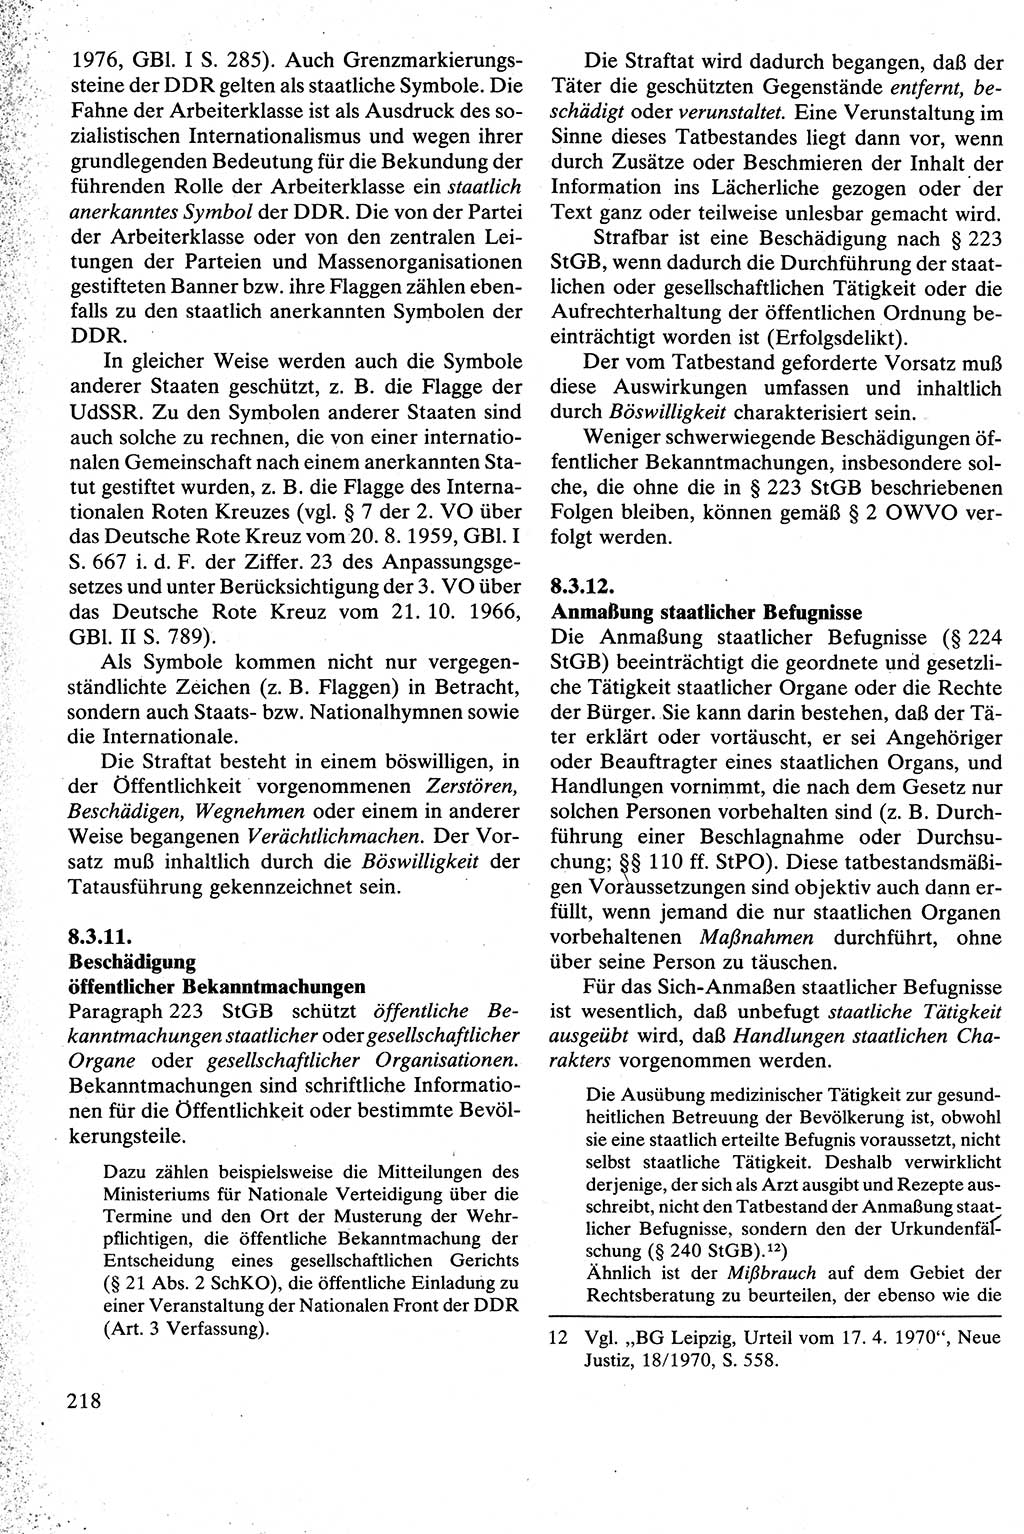 Strafrecht [Deutsche Demokratische Republik (DDR)], Besonderer Teil, Lehrbuch 1981, Seite 218 (Strafr. DDR BT Lb. 1981, S. 218)